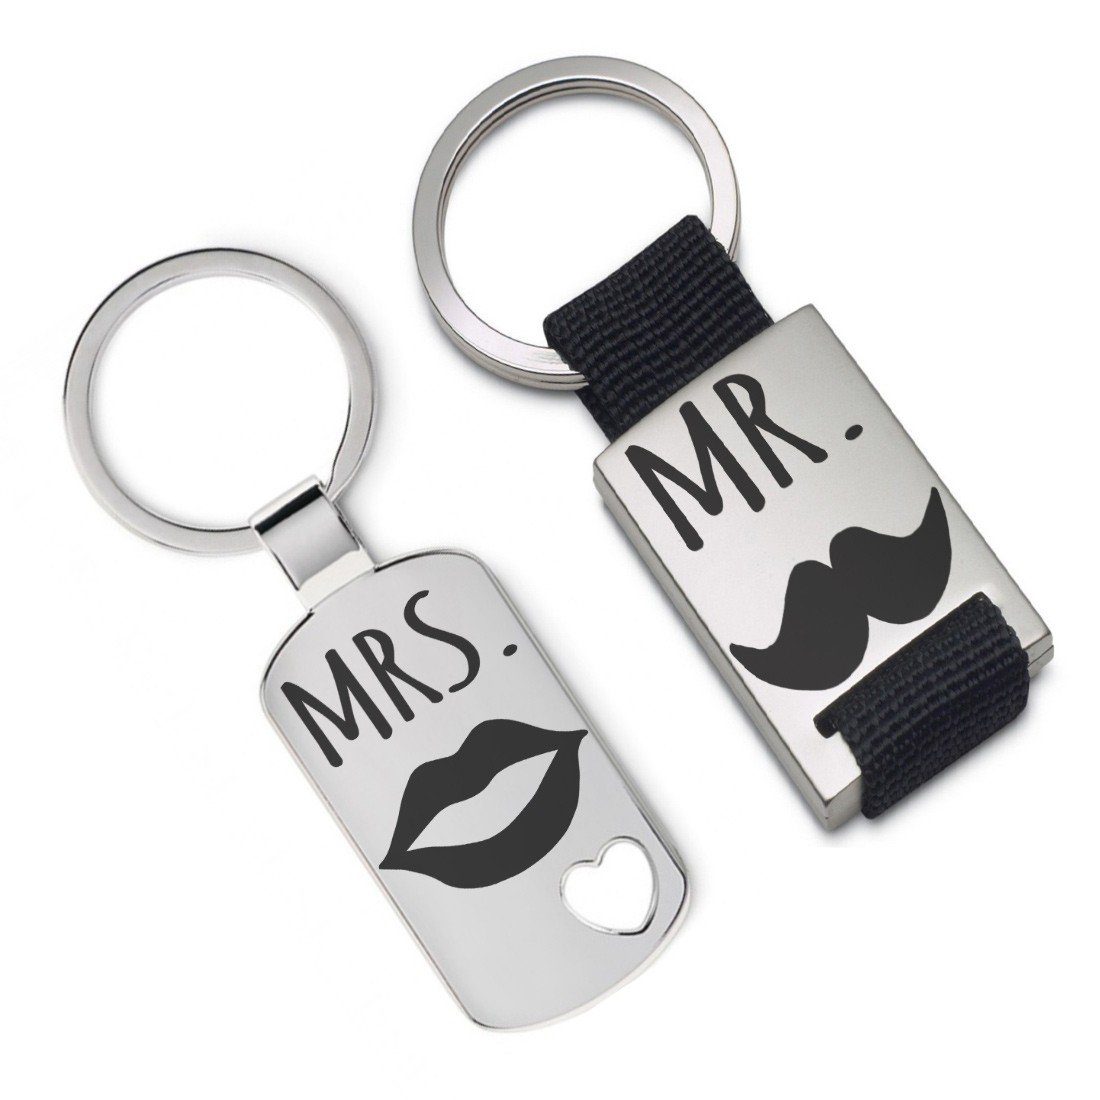 Lieblingsmensch Schlüsselanhänger Set - Mr. & Mrs. - ein tolles Geschenk und Glücksbringer (2 Schlüsselanhänger mit Gravur, inklusive Schlüsselring), Robuste und filigrane Lasergravur